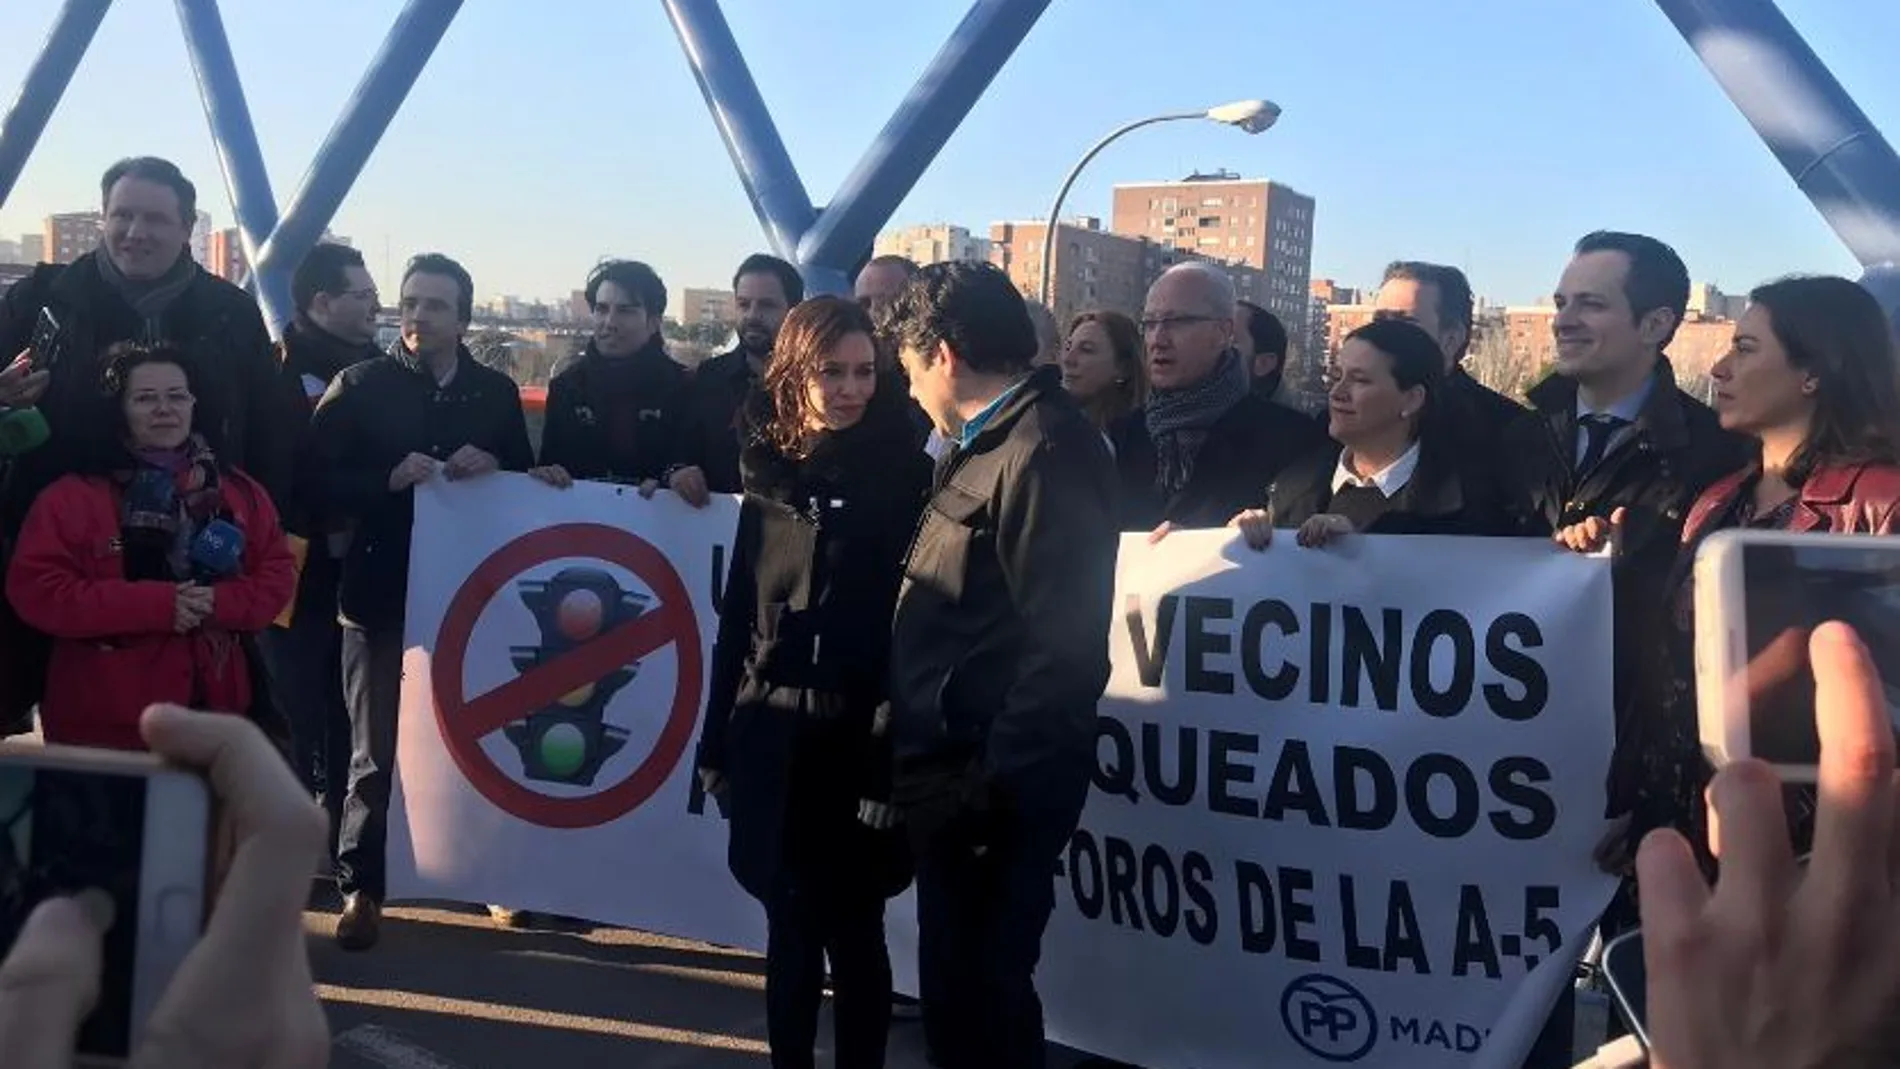 Díaz Ayuso ha acudido esta mañana a la A-5 acompañada de alcaldes y portavoces del PP en municipios del suroeste madrileño para protestar contra los polémicos semáforos